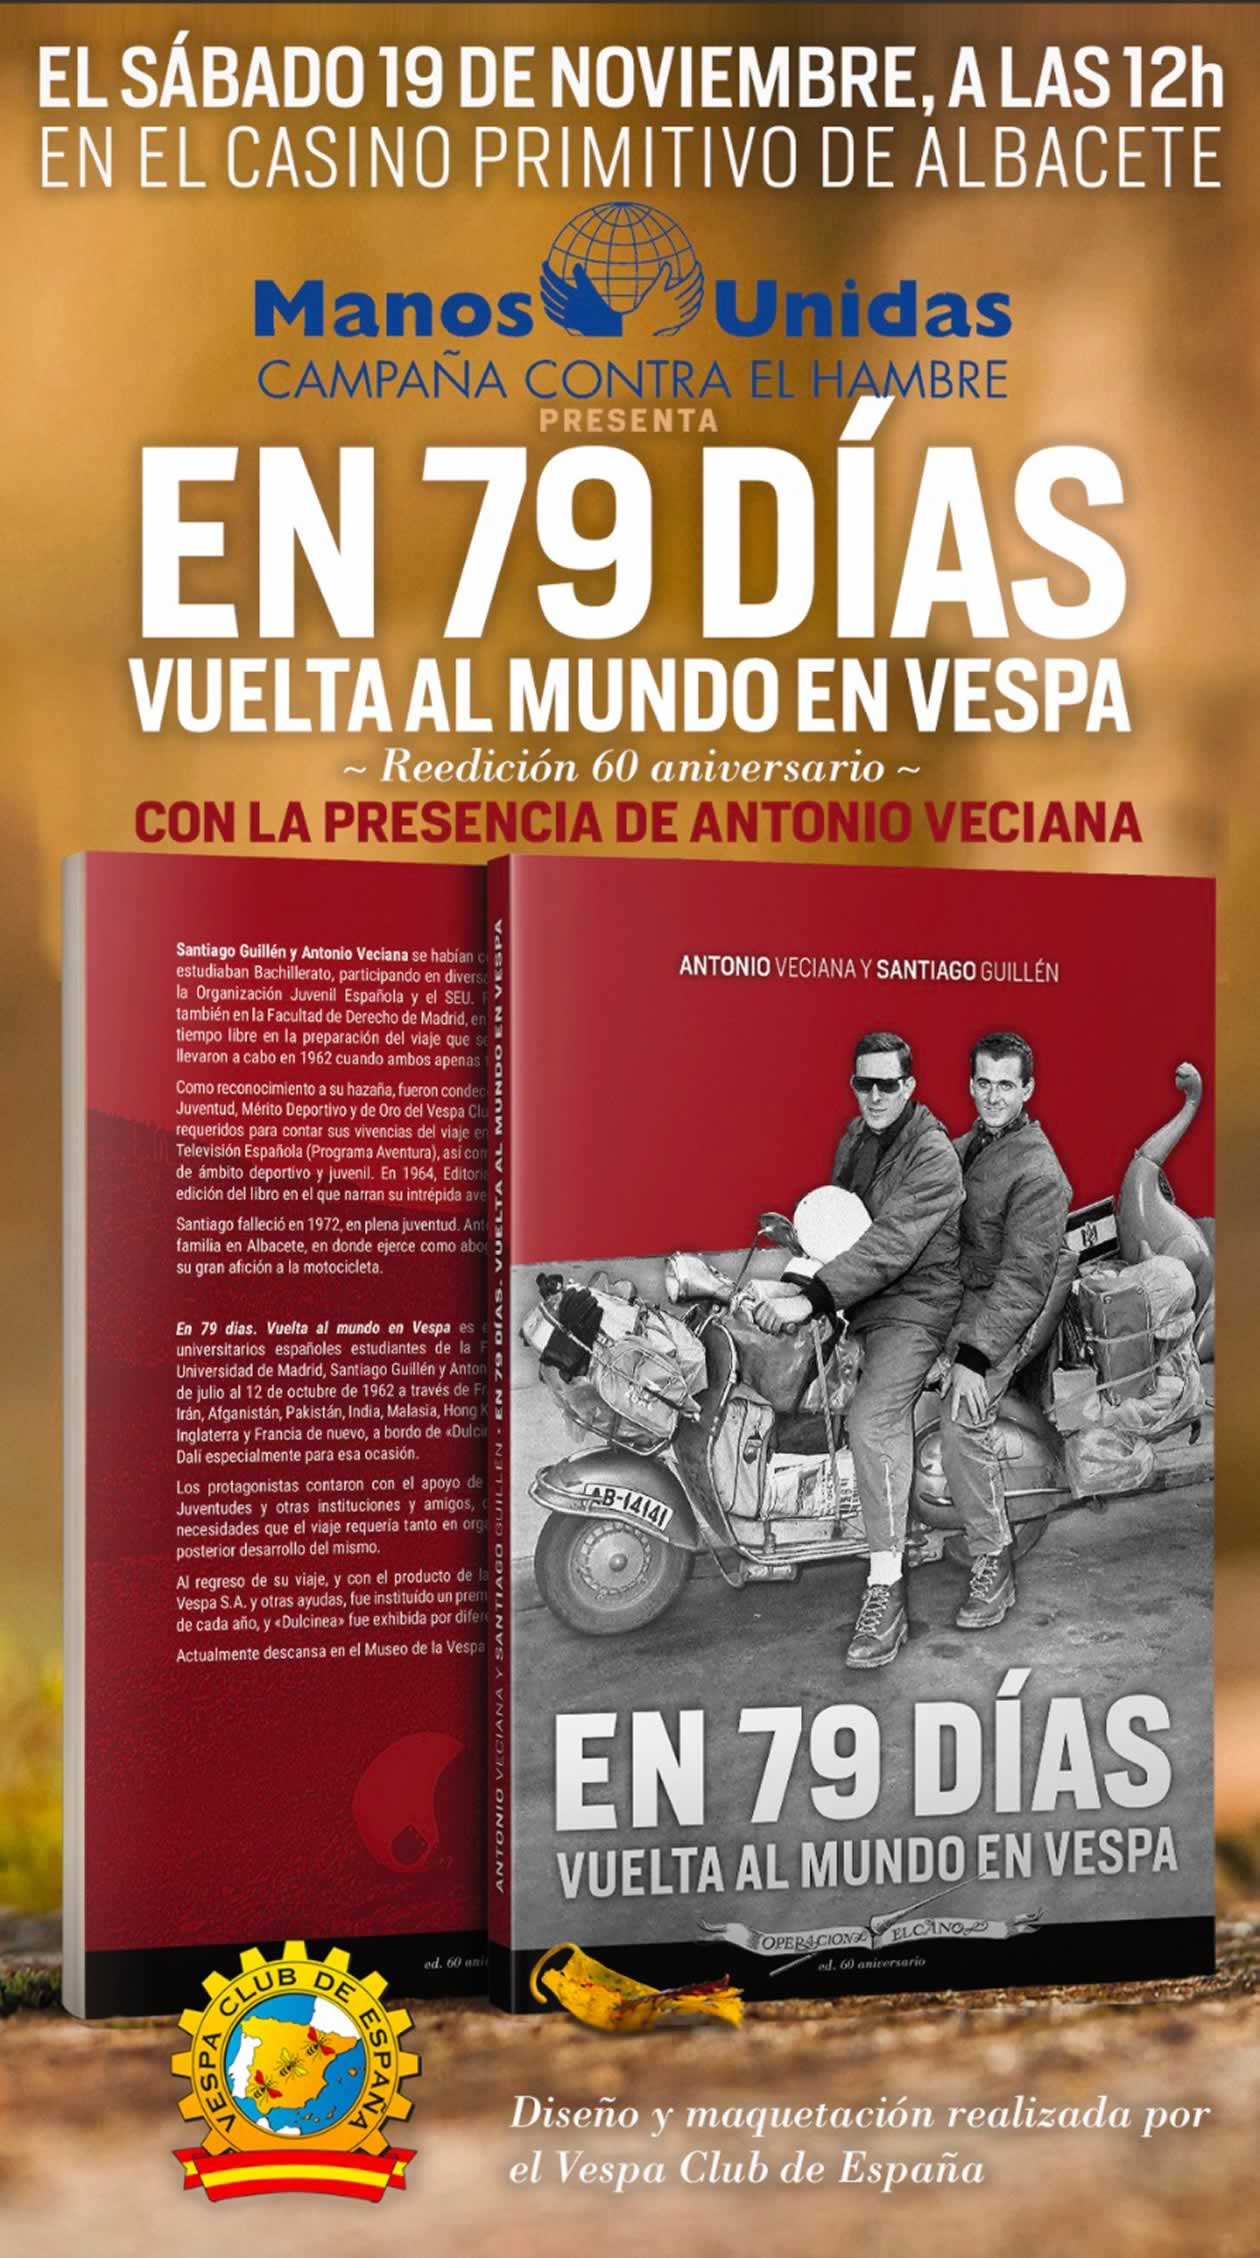 Albacete acogerá la presentación de la reedición del libro "Vuelta al mundo en vespa en 79 días"